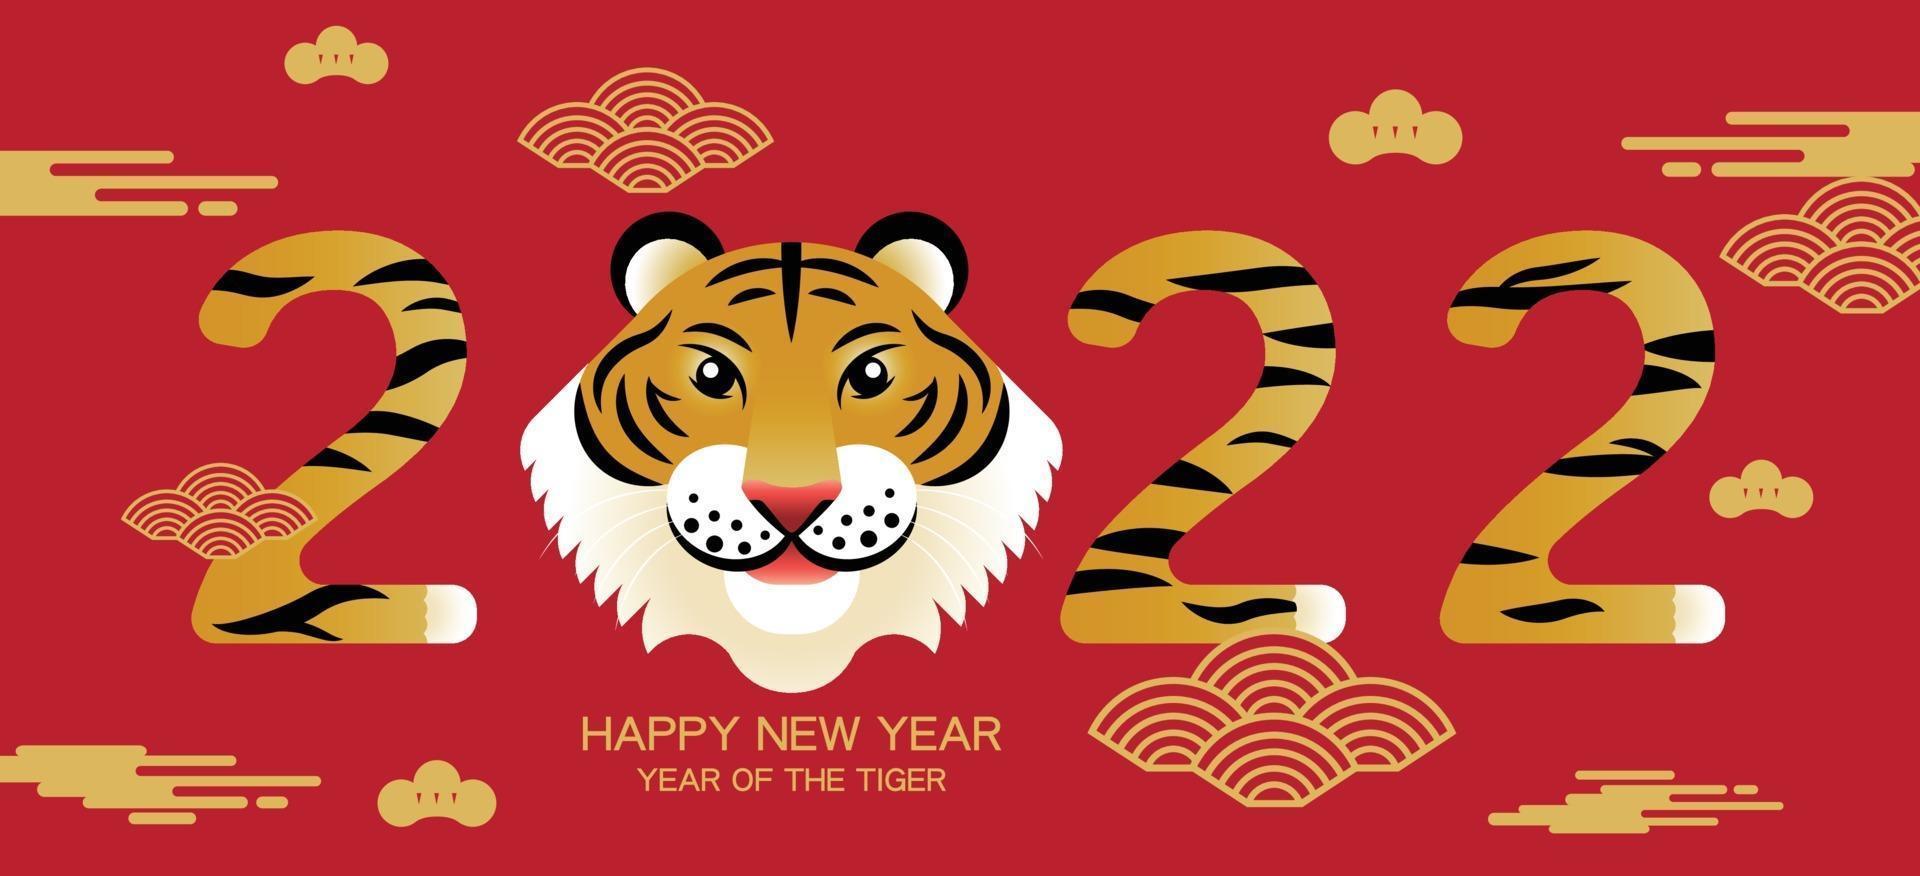 Frohes neues Jahr, chinesisches neues Jahr, 2022, Jahr des Tigers, Zeichentrickfigur, Royale Tiger, flaches Design vektor